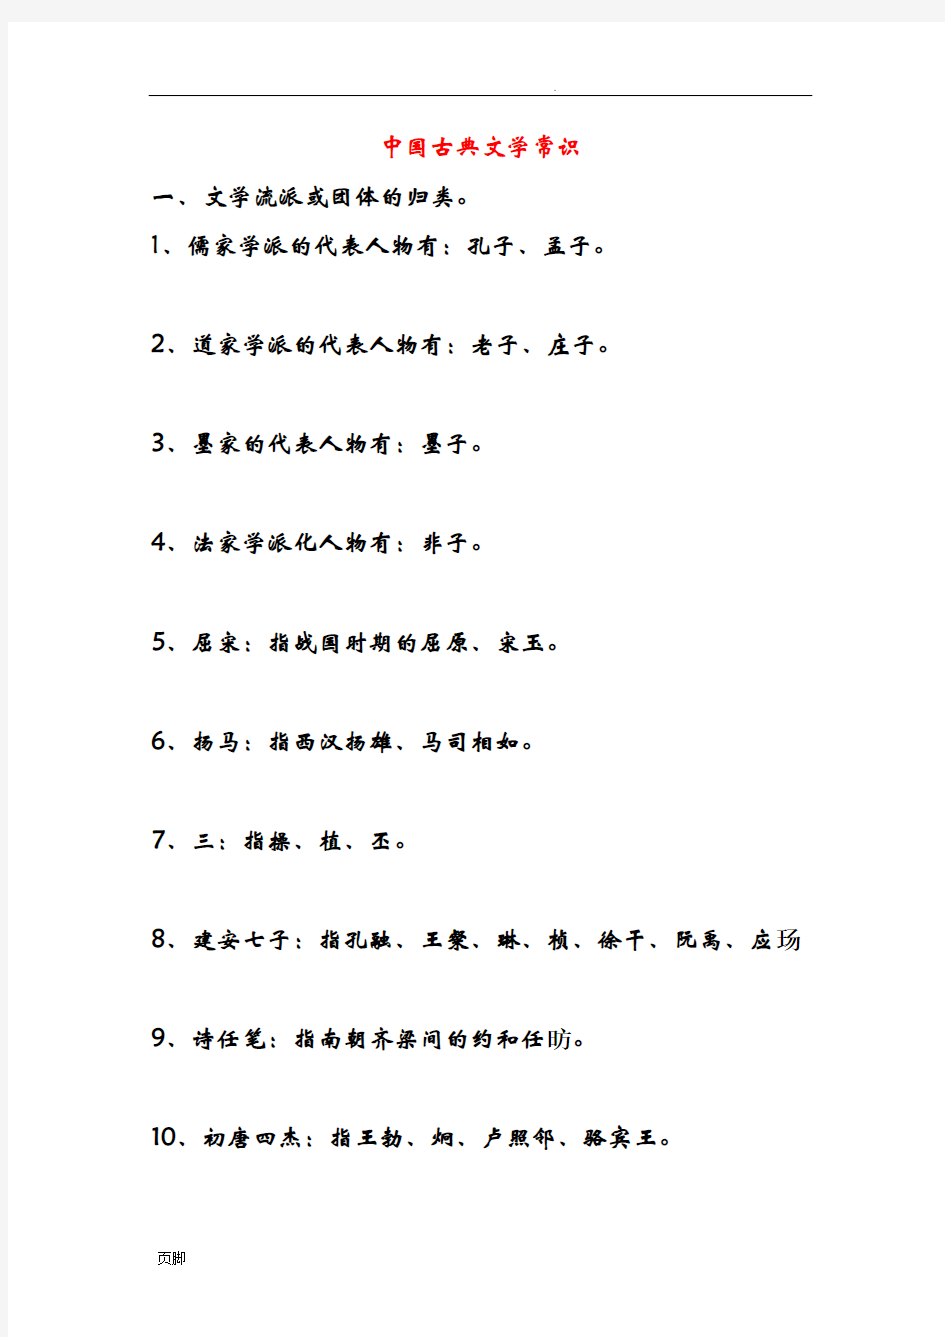 中国古典文学常识